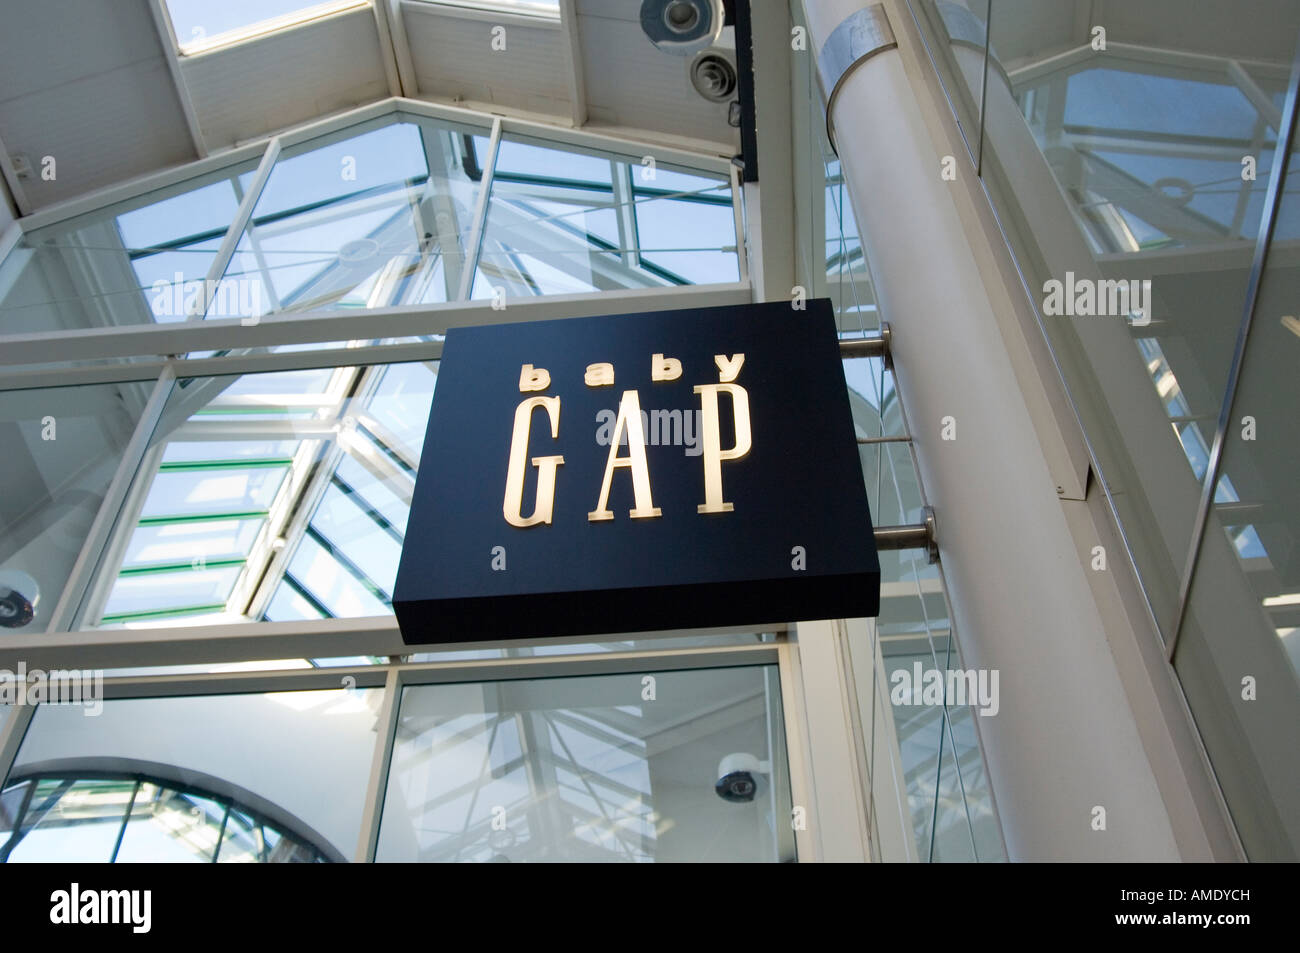 Signe pour bébé boutique gap dans shopping mall Banque D'Images